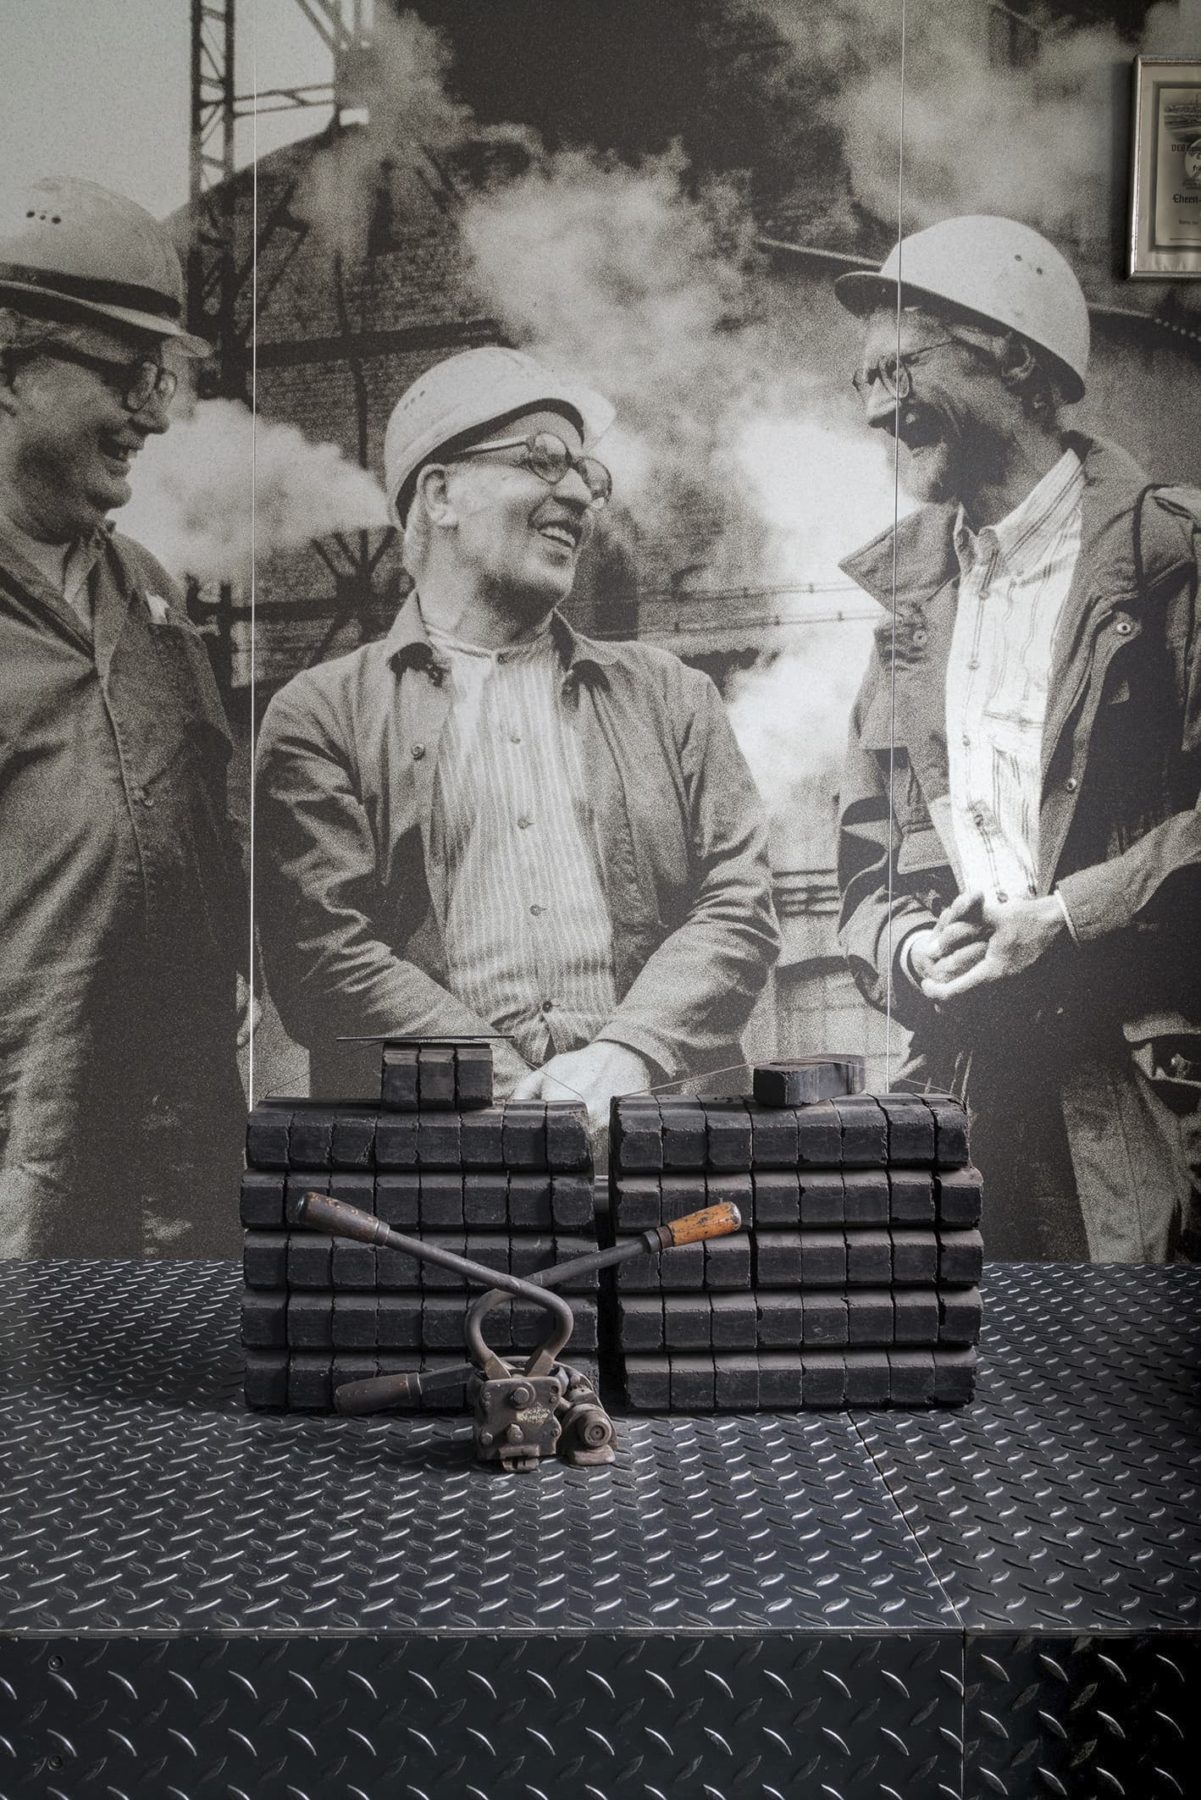 Ausstellungsbild mit Menschen in der Kohle, davor gestapelte Kohlebriketts